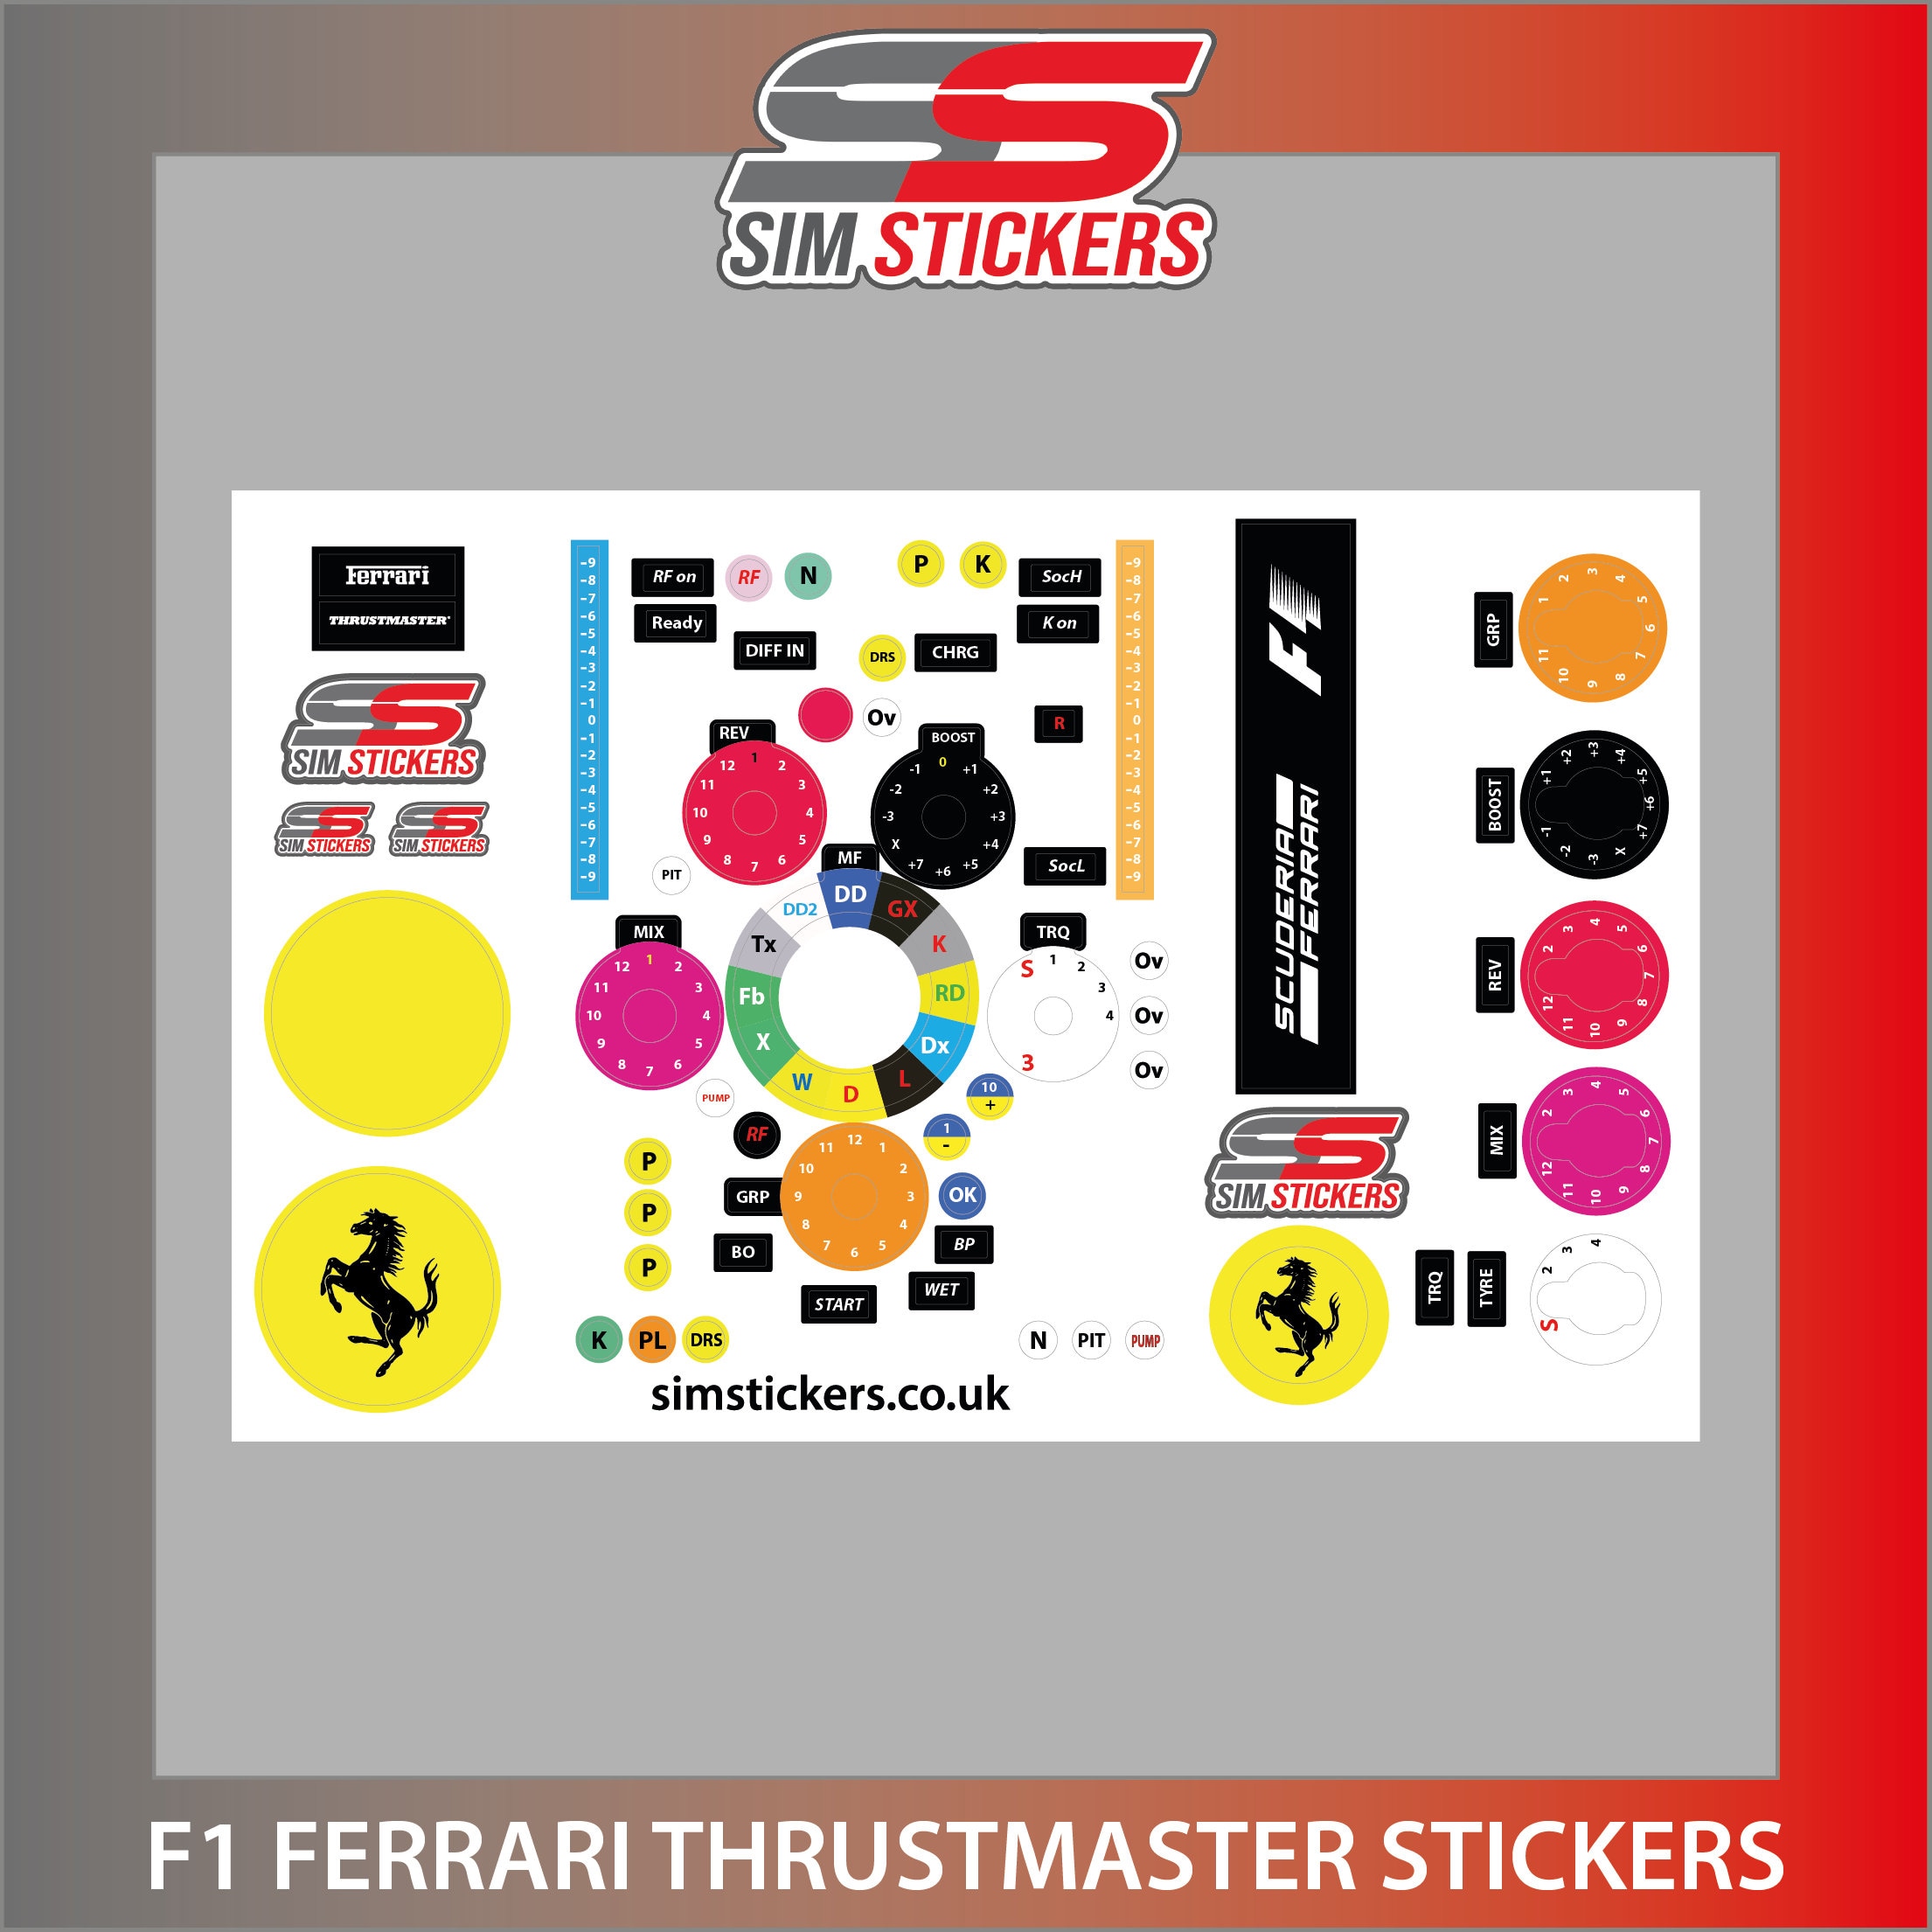 PNNNU Auto-Emblem-Abzeichen für Ferrari 3D-Aufkleber für die